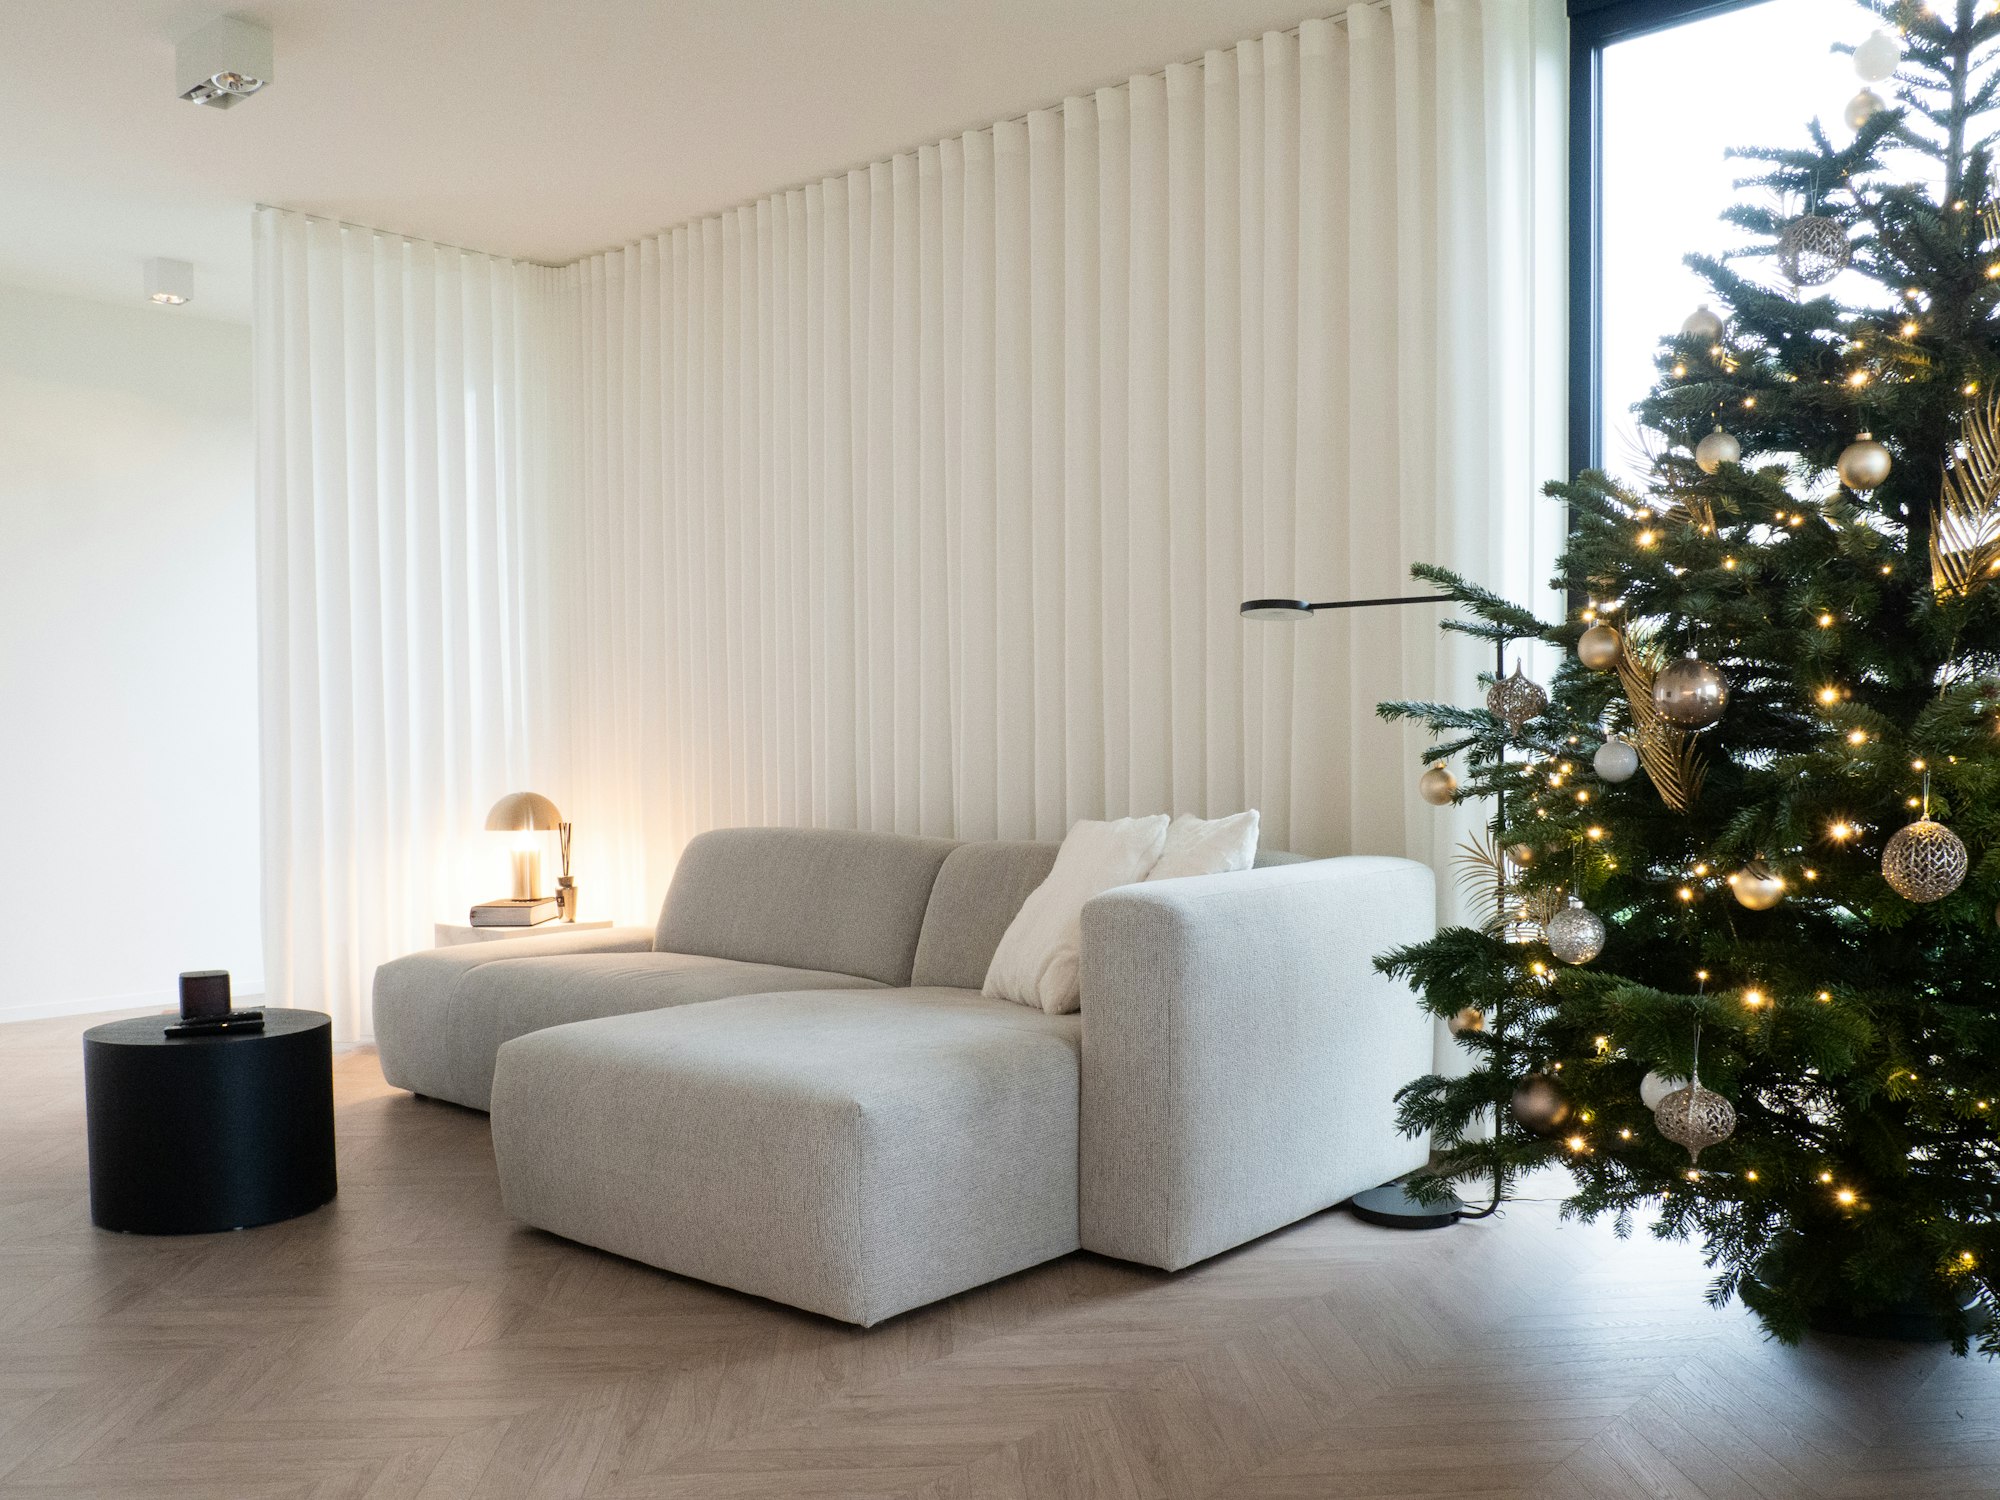 Skilpod #140 - interieur woonkamer,  modern design met kerstboom